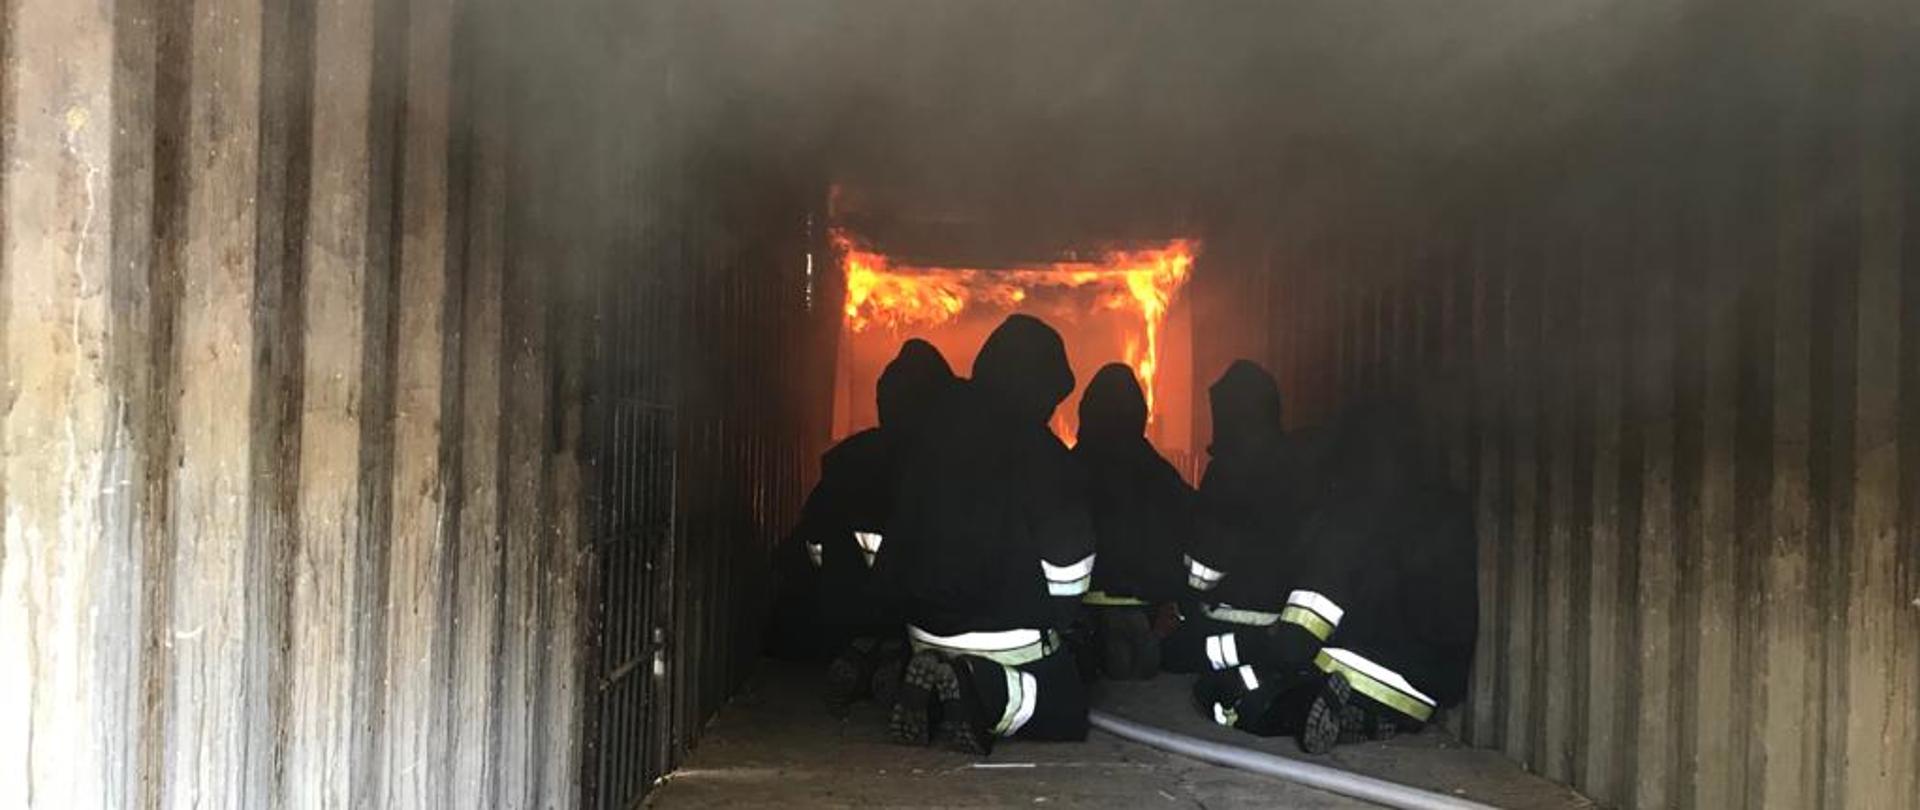 Strażacy przebywający w środku komory ogniowej. W tle widoczne płomienie.